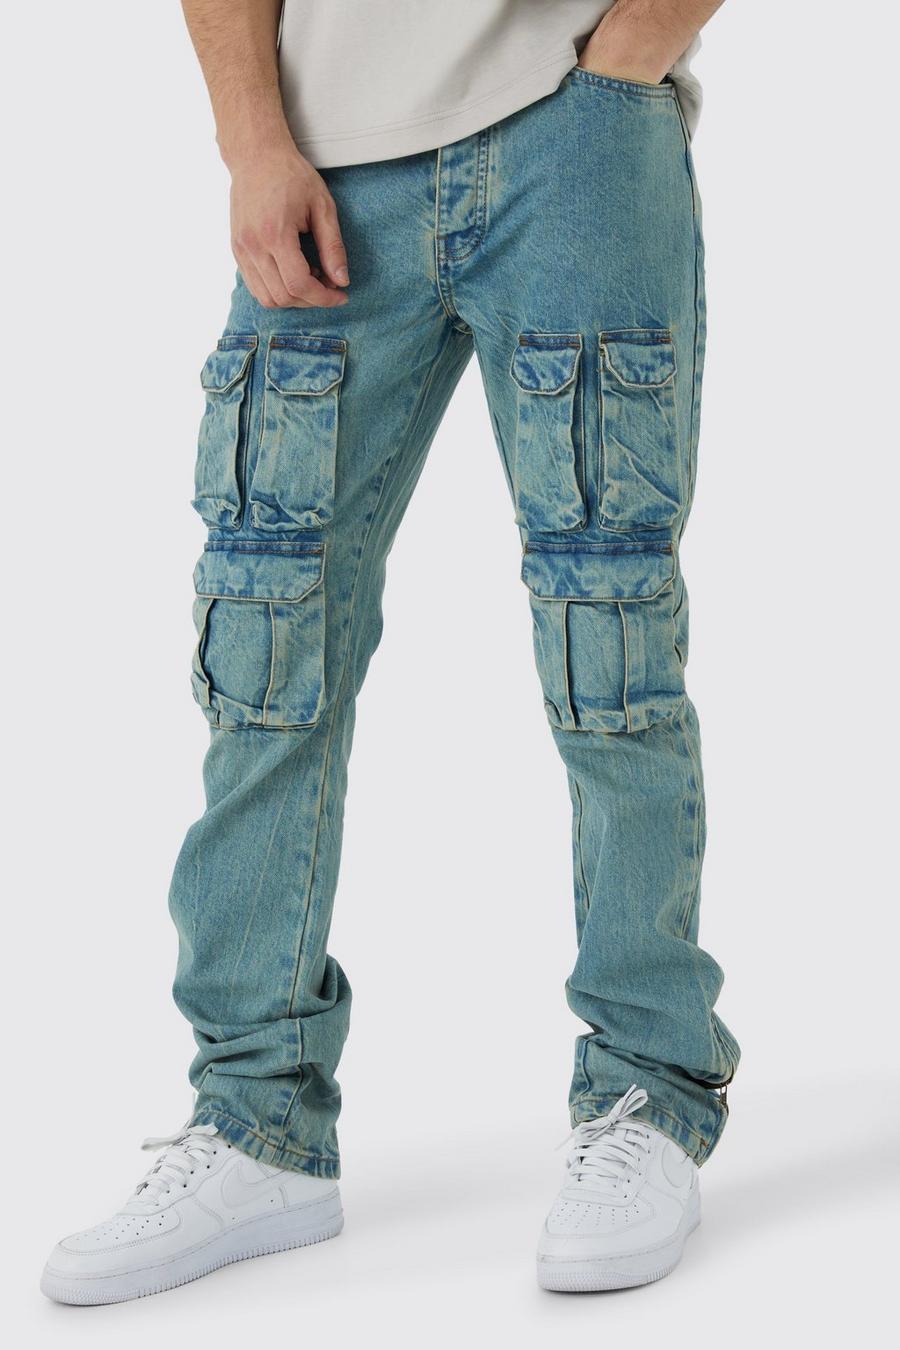 Jeans Cargo Tall Slim Fit in denim rigido slavato con zip e inserti, Antique blue